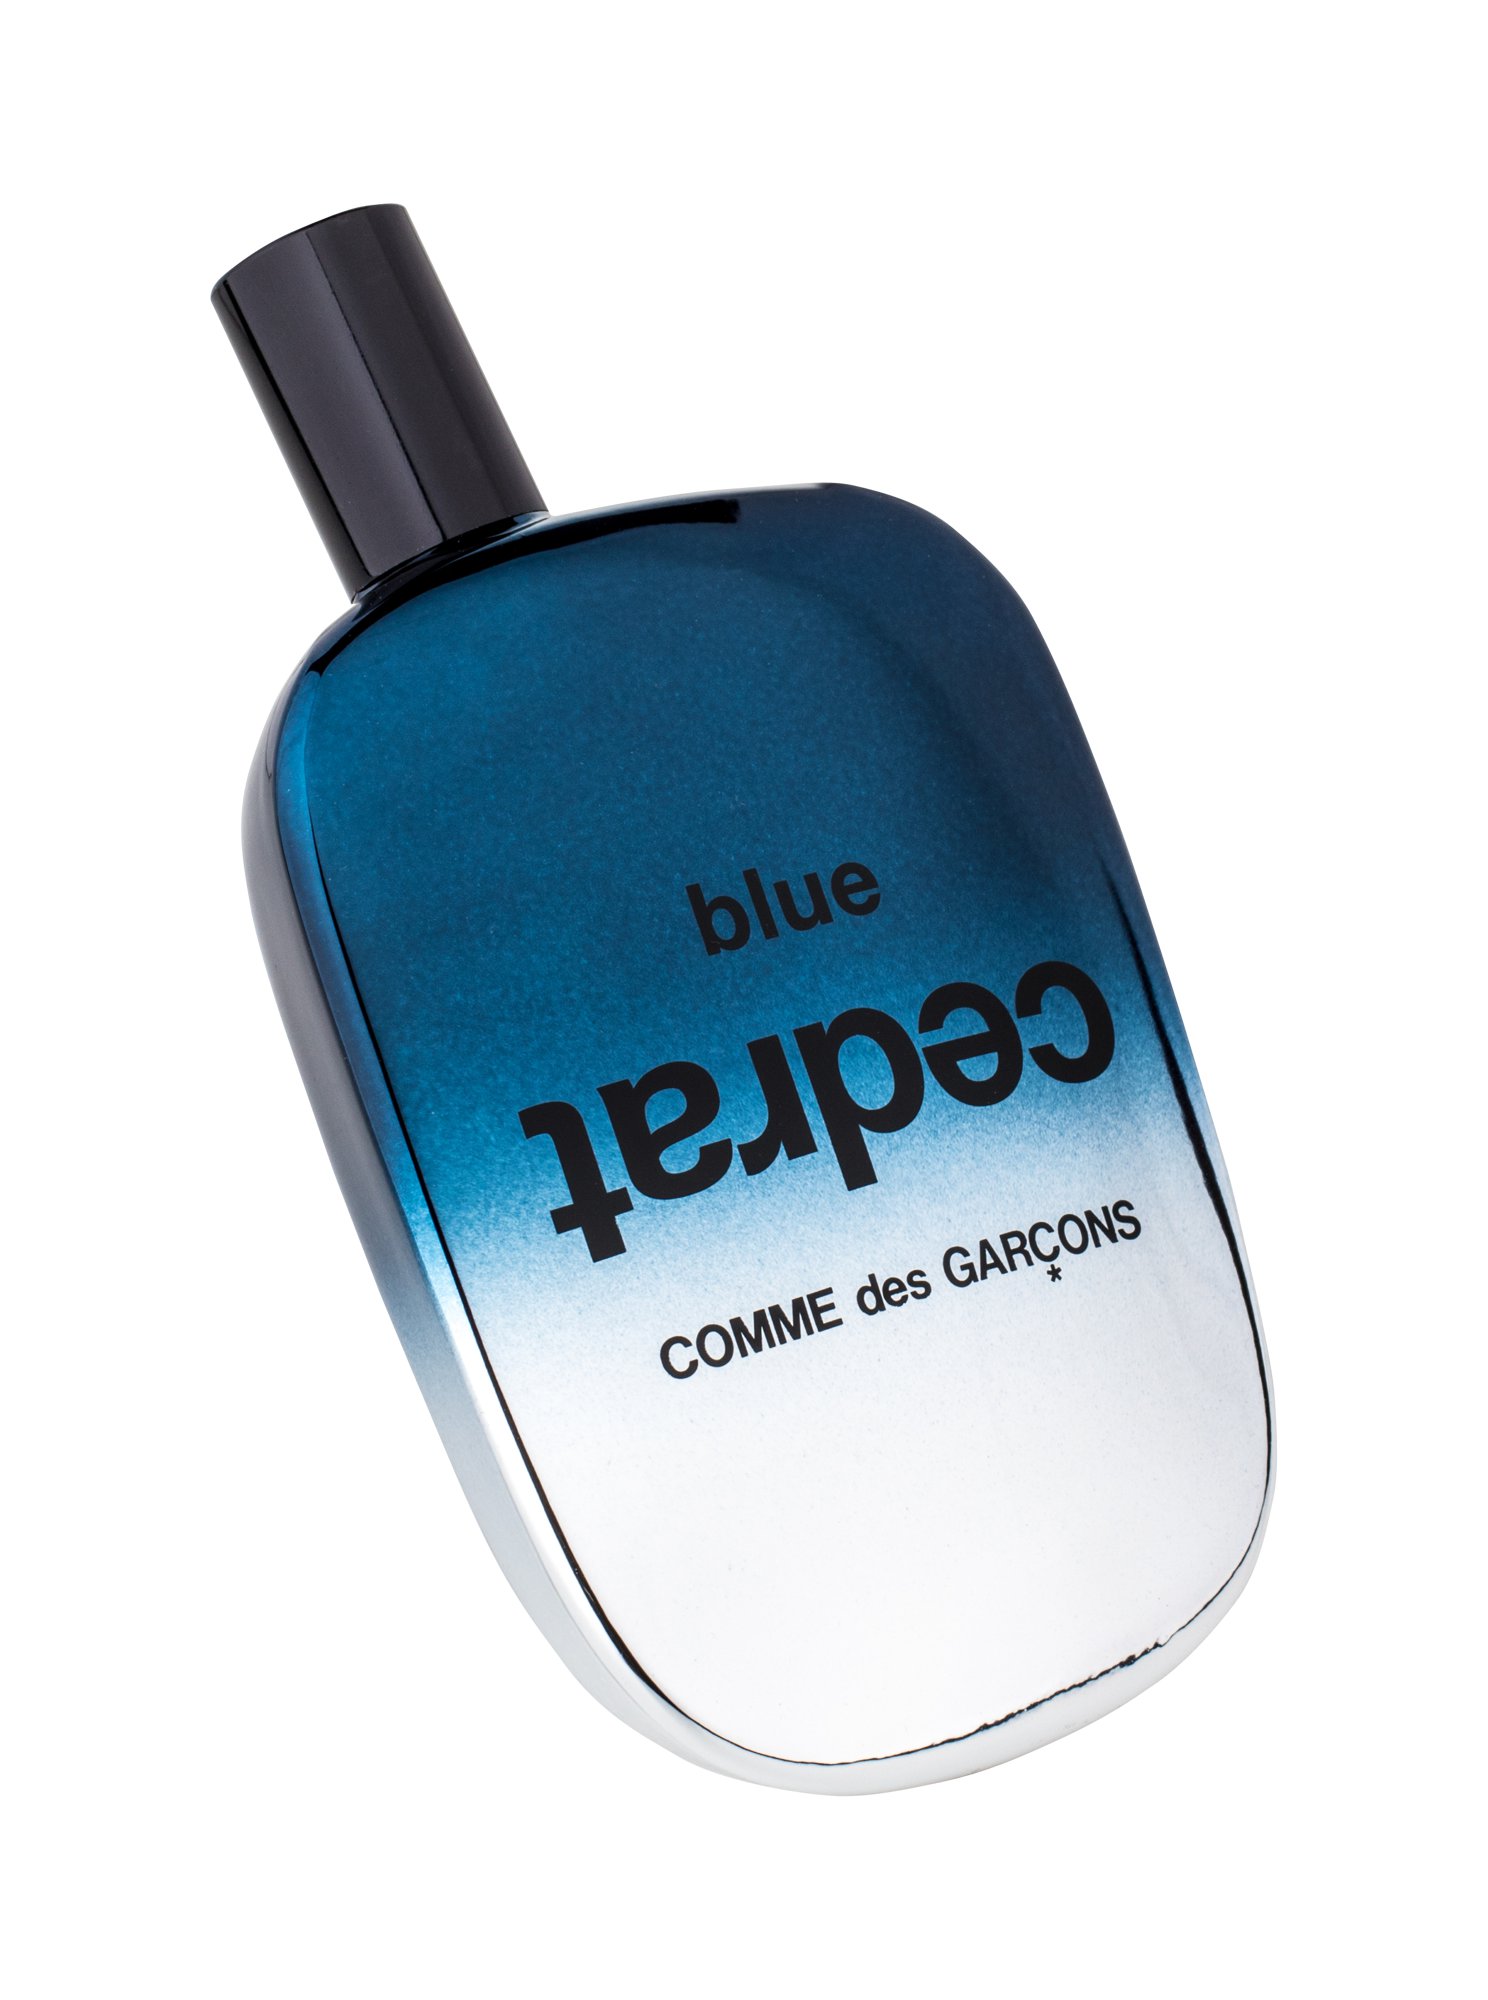 COMME des GARCONS Blue Cedrat, EDP 100ml